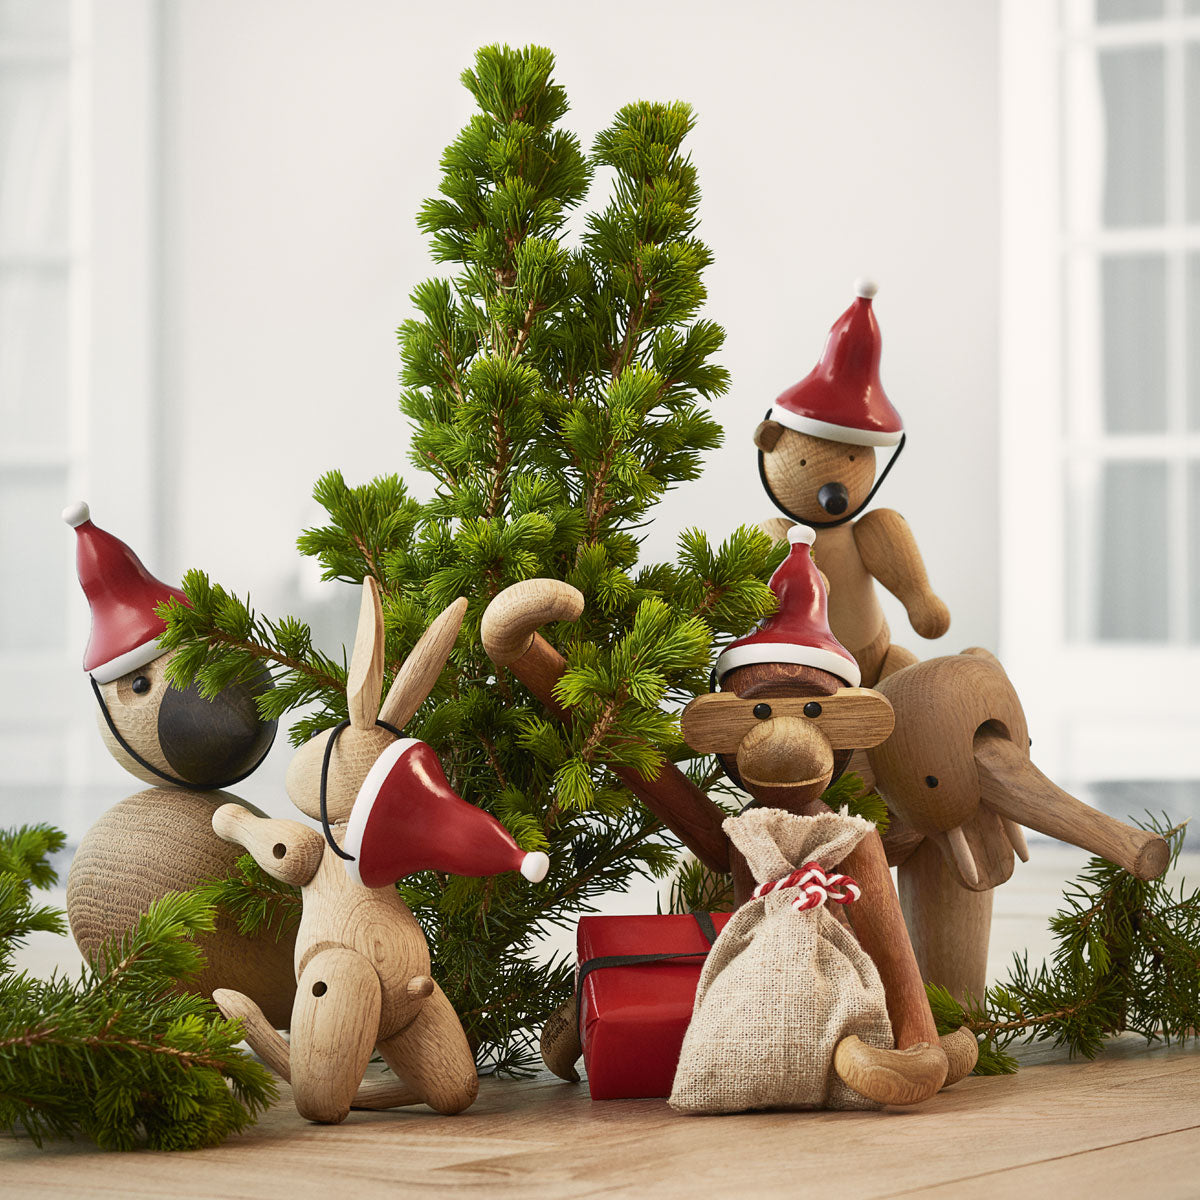 Rosendahl - Kay Bojesen - Santas Cap for Small Wooden Monkey